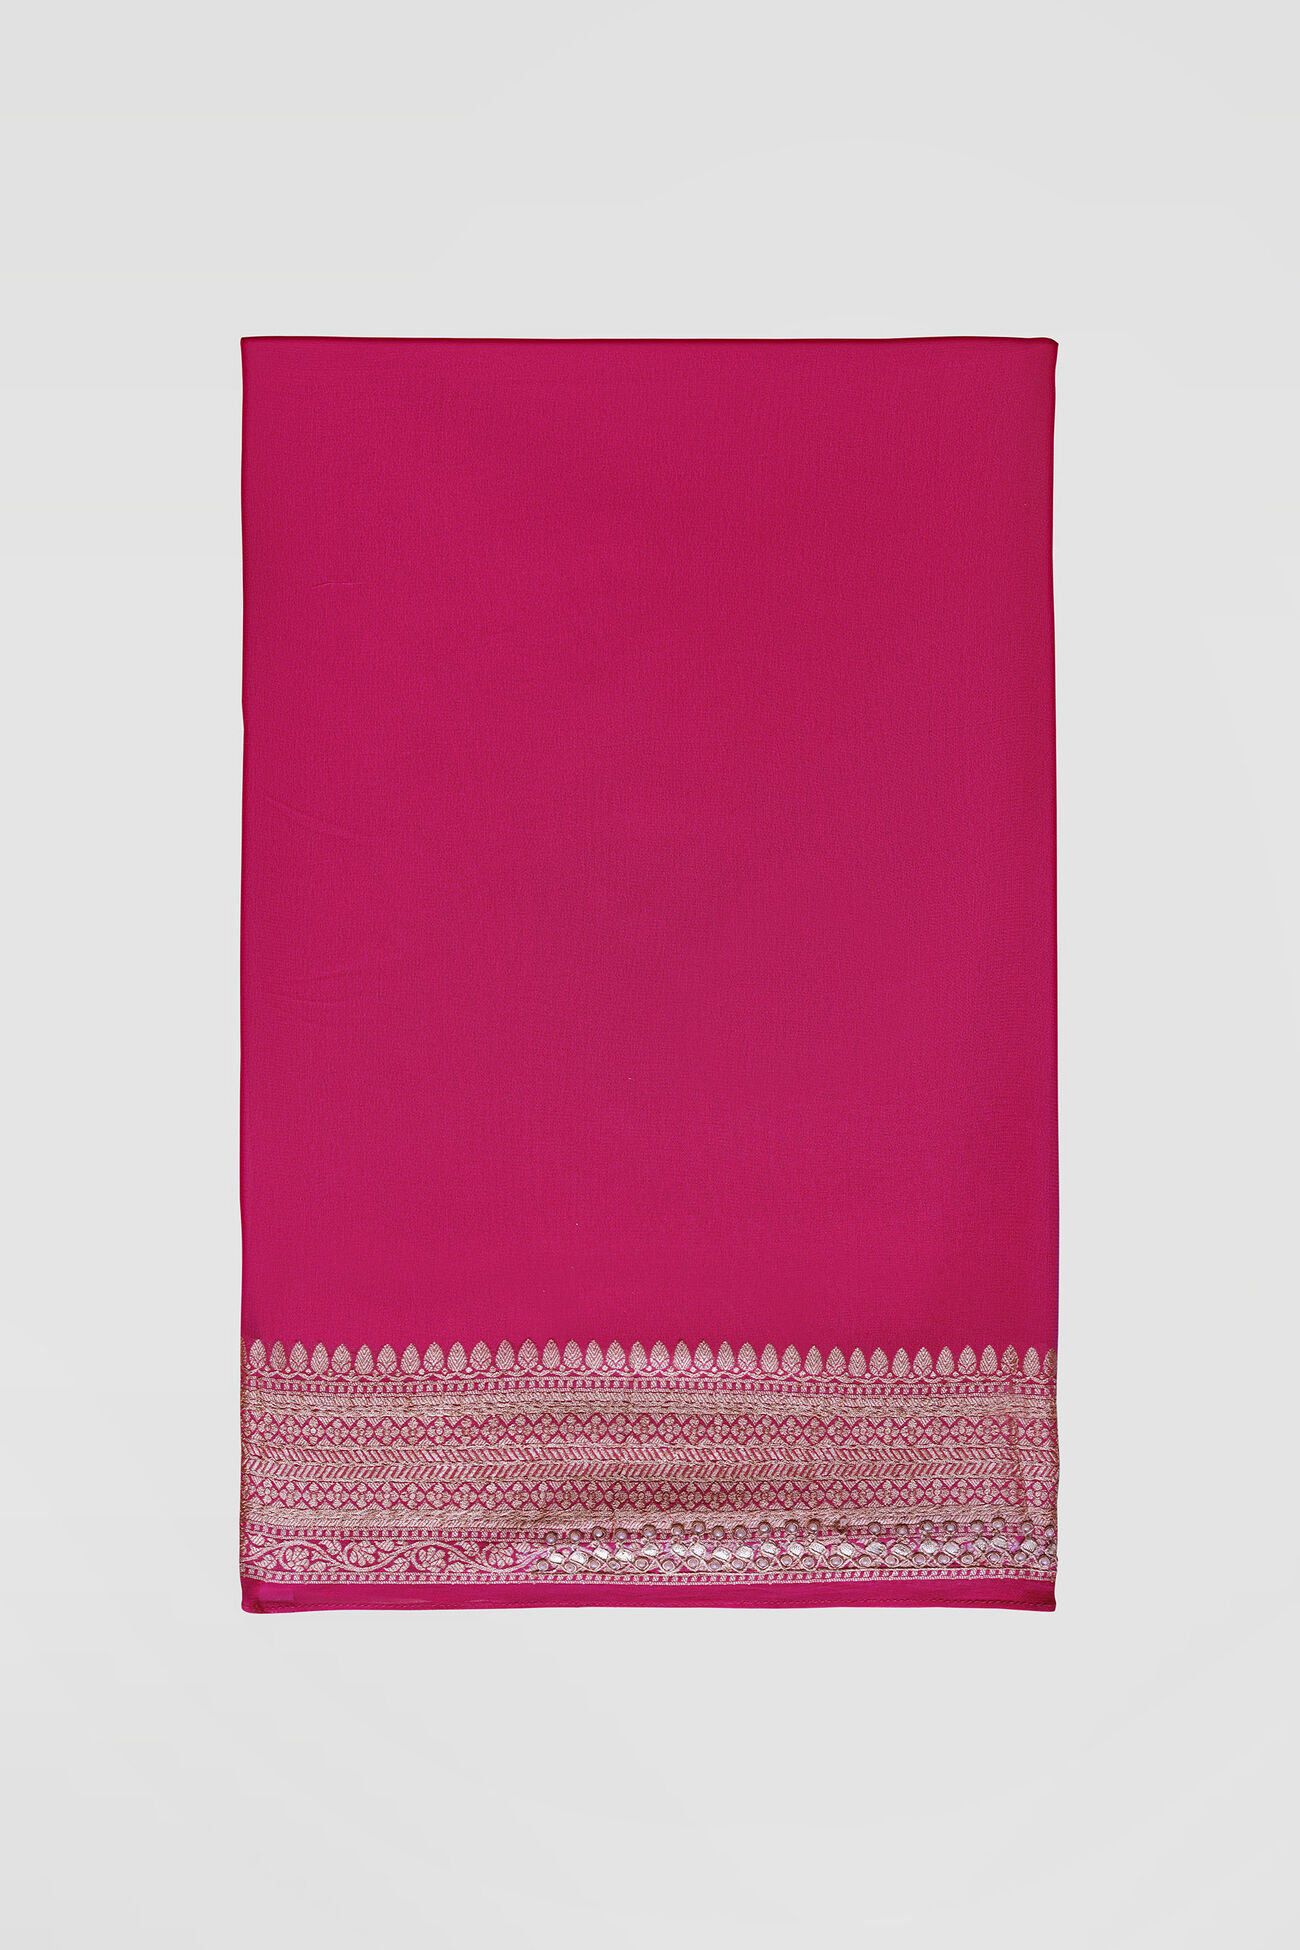 Lavanya Benarasi Silk Embroidered Saree - Hot Pink, Hot Pink, image 6